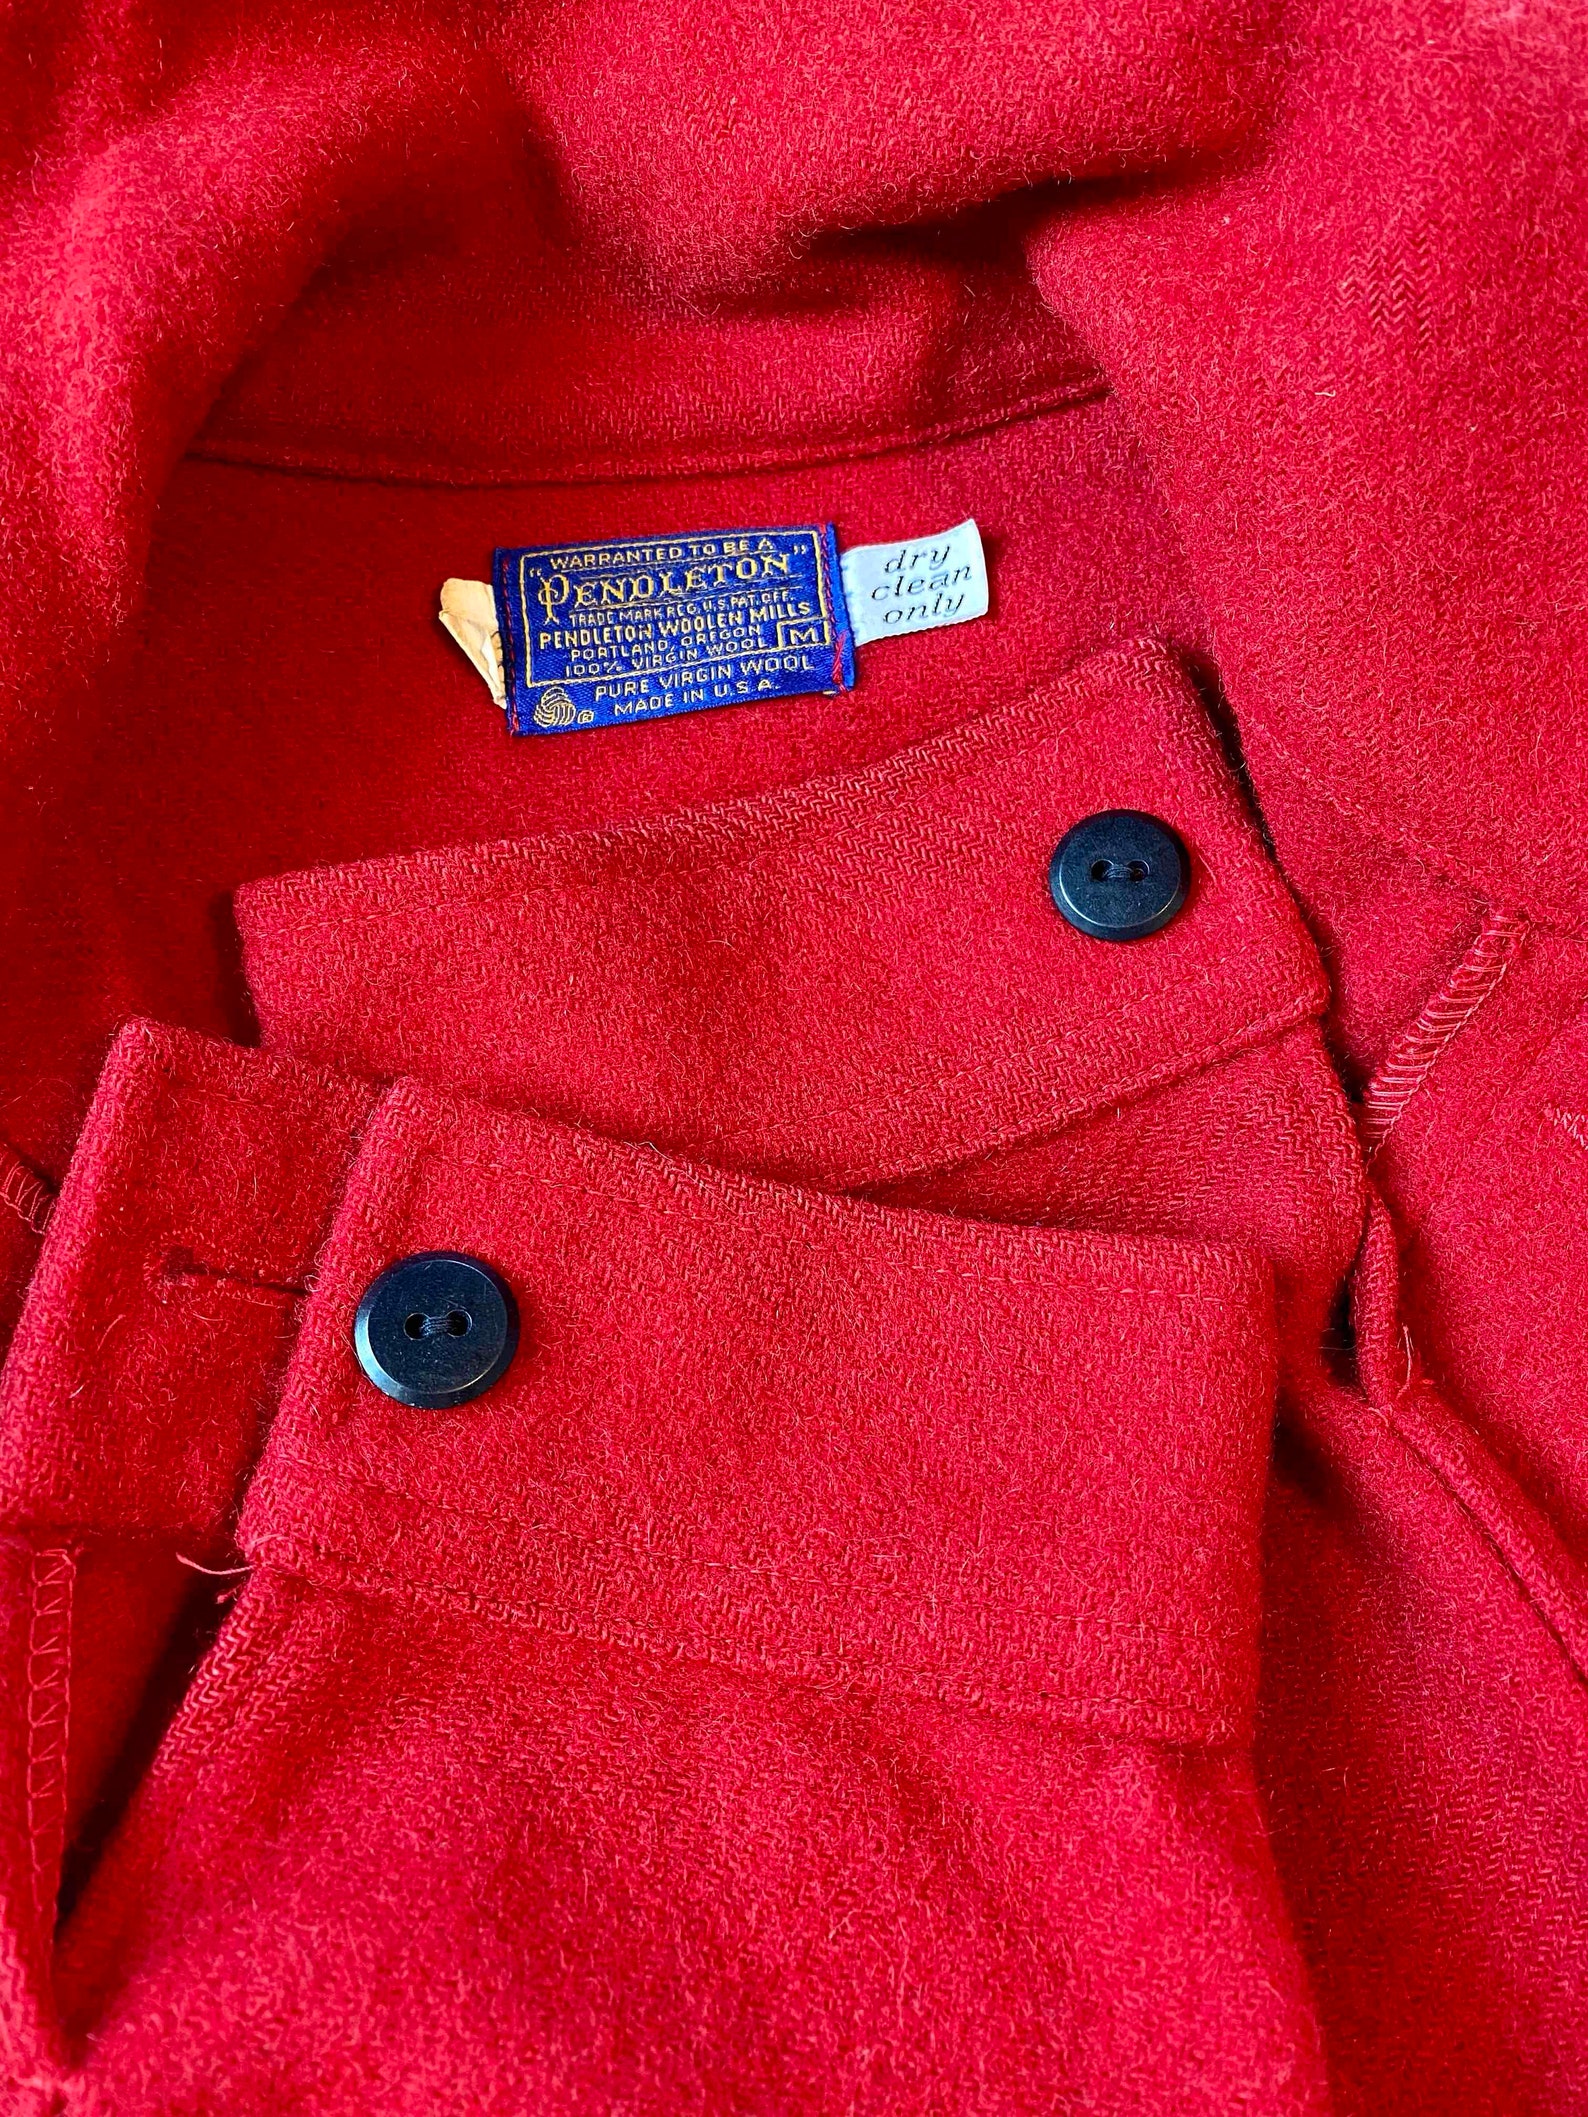 1970s Red Pendleton Mackinaw Hunting Coat Vintage | Etsy